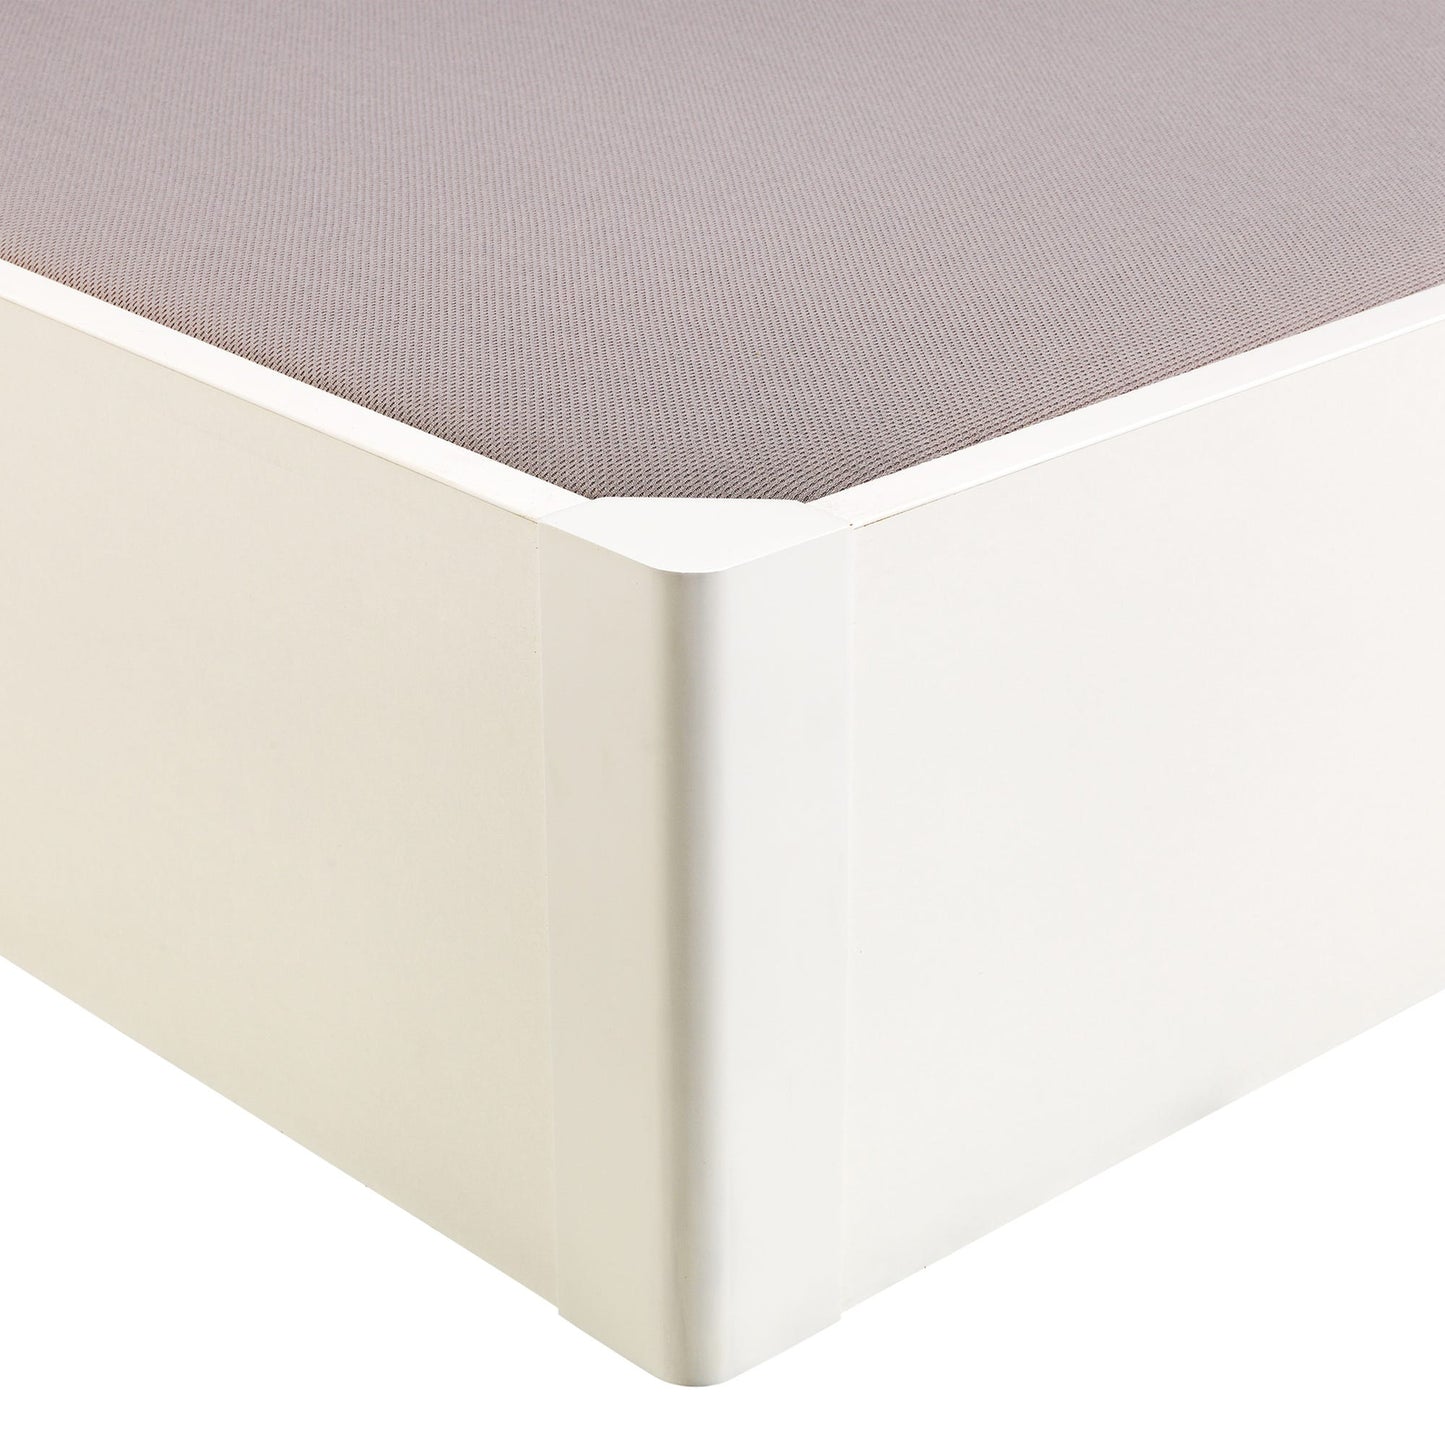 Canapé abatible de madera tapa única de color blanco - DESIGN - 80x200